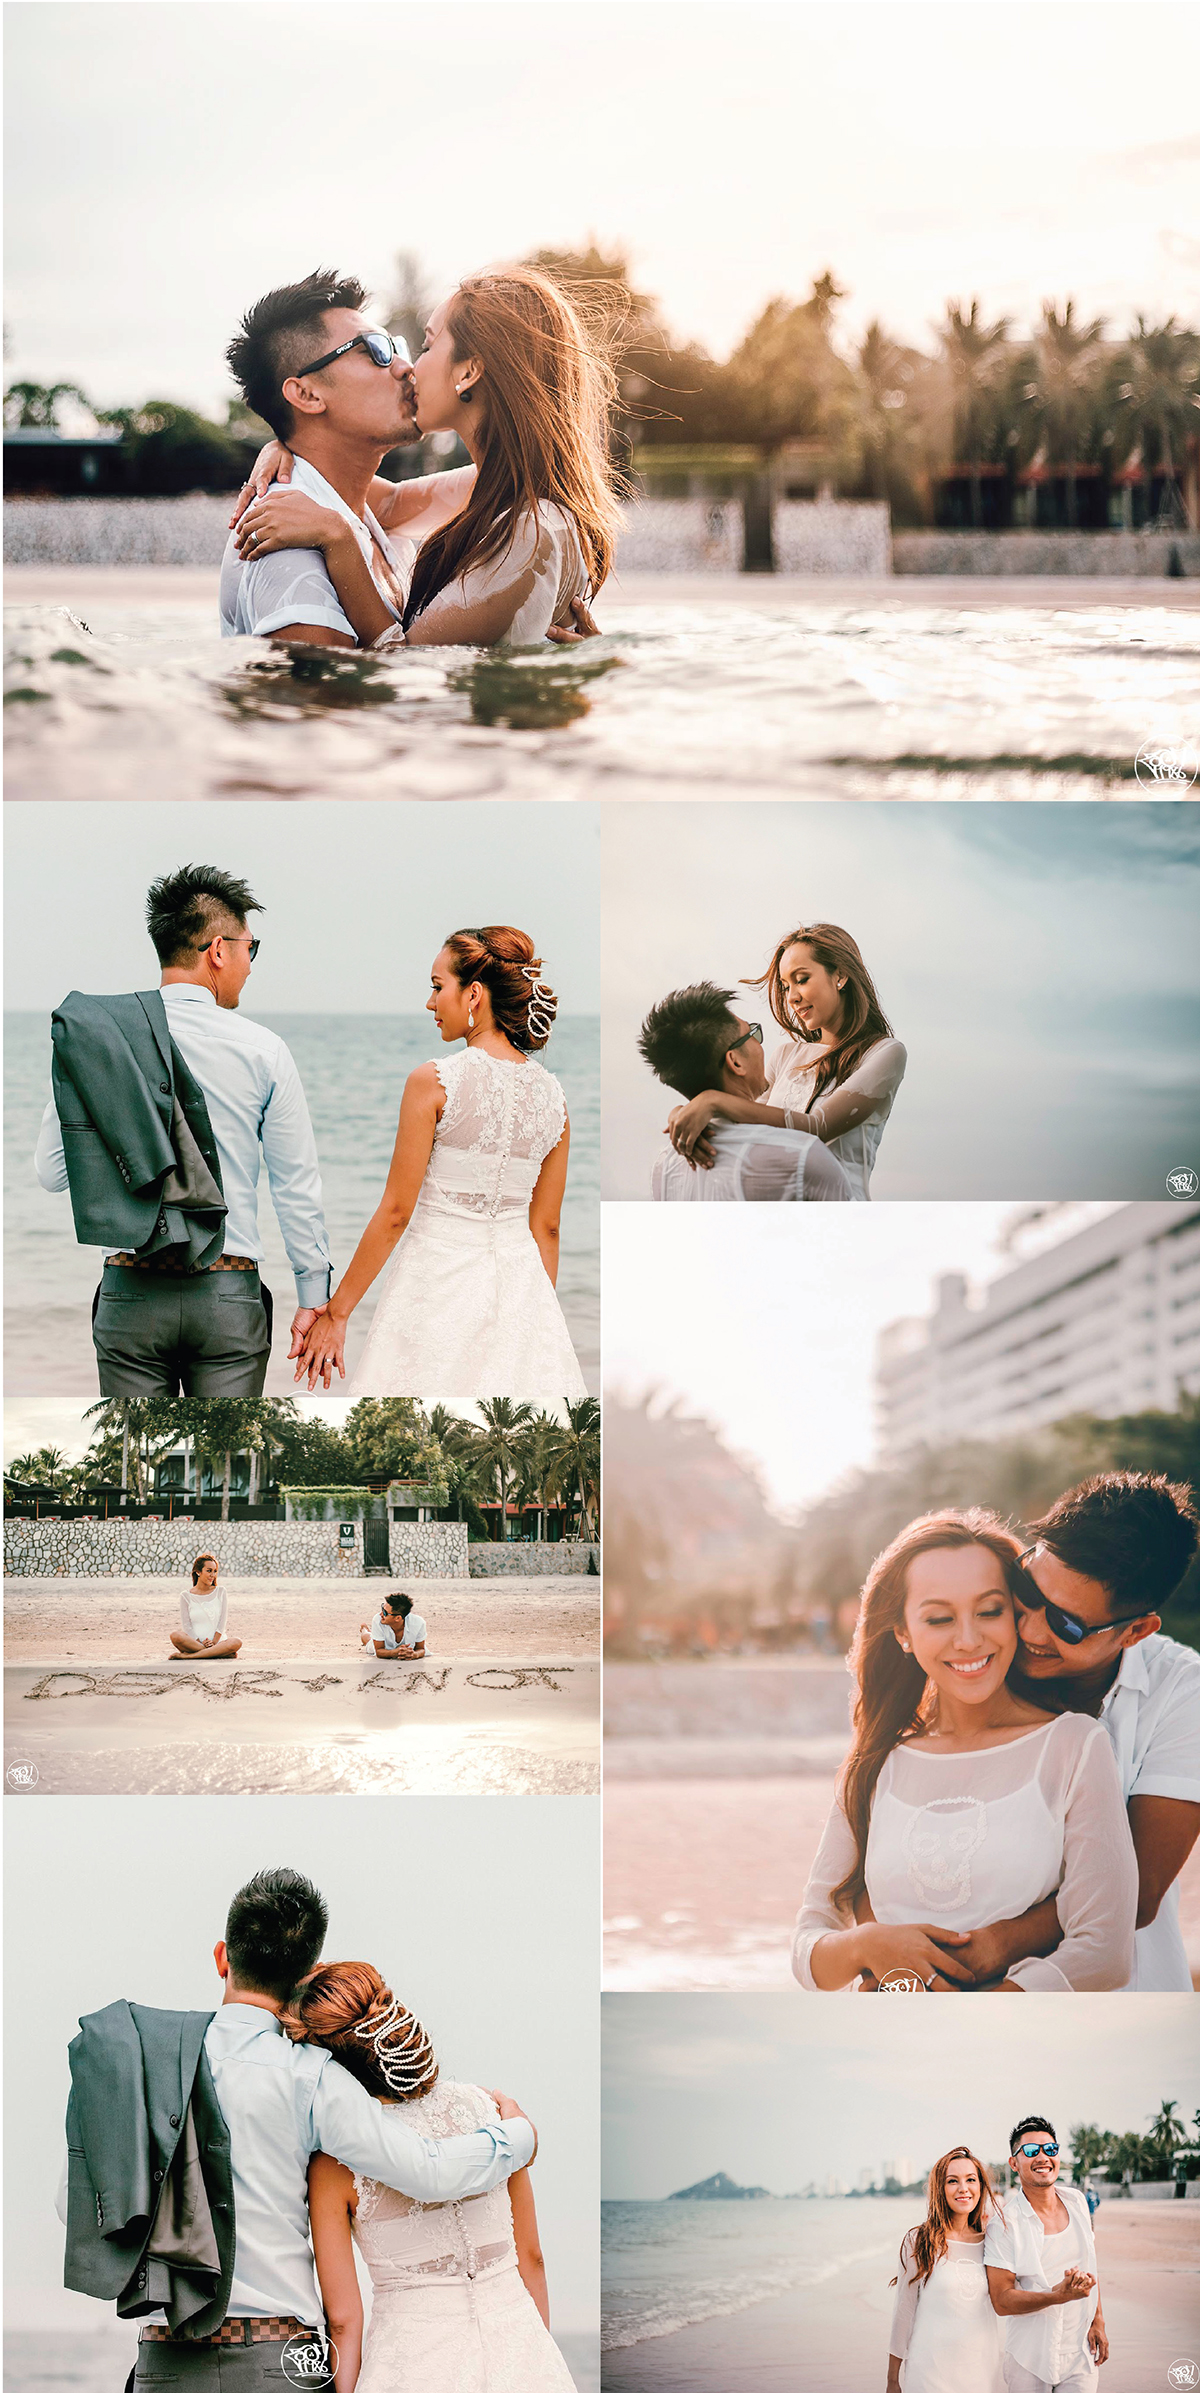 แพ็คเกจถ่ายพรีเวดดิ้ง ริมทะเล , Wedding on The Beach , หาช่างภาพถ่ายรูปแต่งงาน , ถ่ายภาพพรีเวดดิ้ง